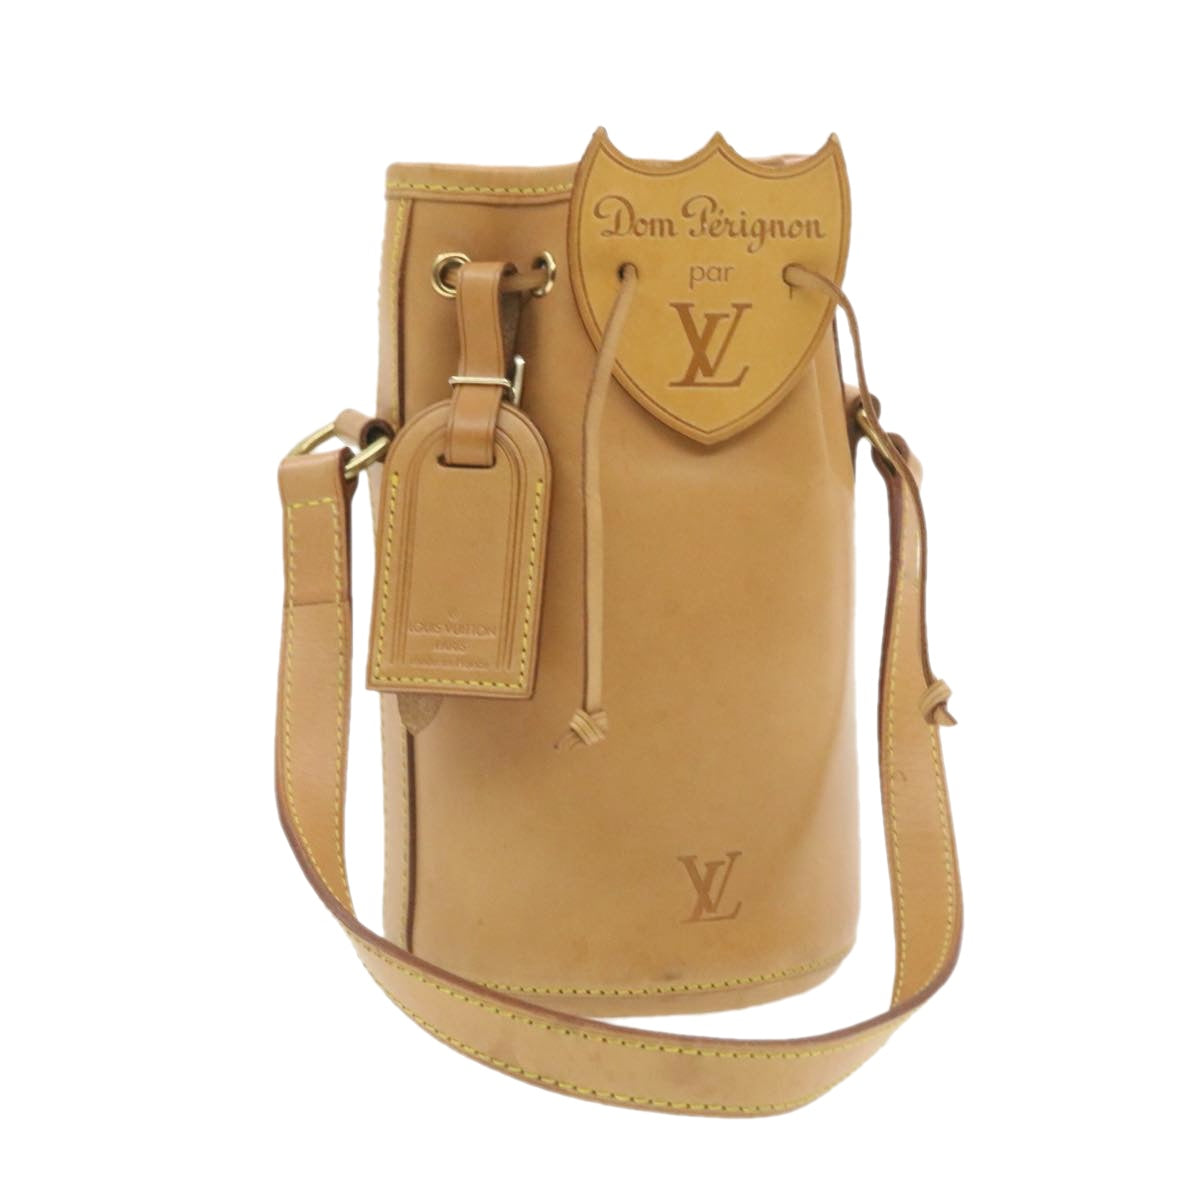 LOUIS VUITTON Nomad Dom Prignon Champagne Case Hand Bag Beige M99057 L